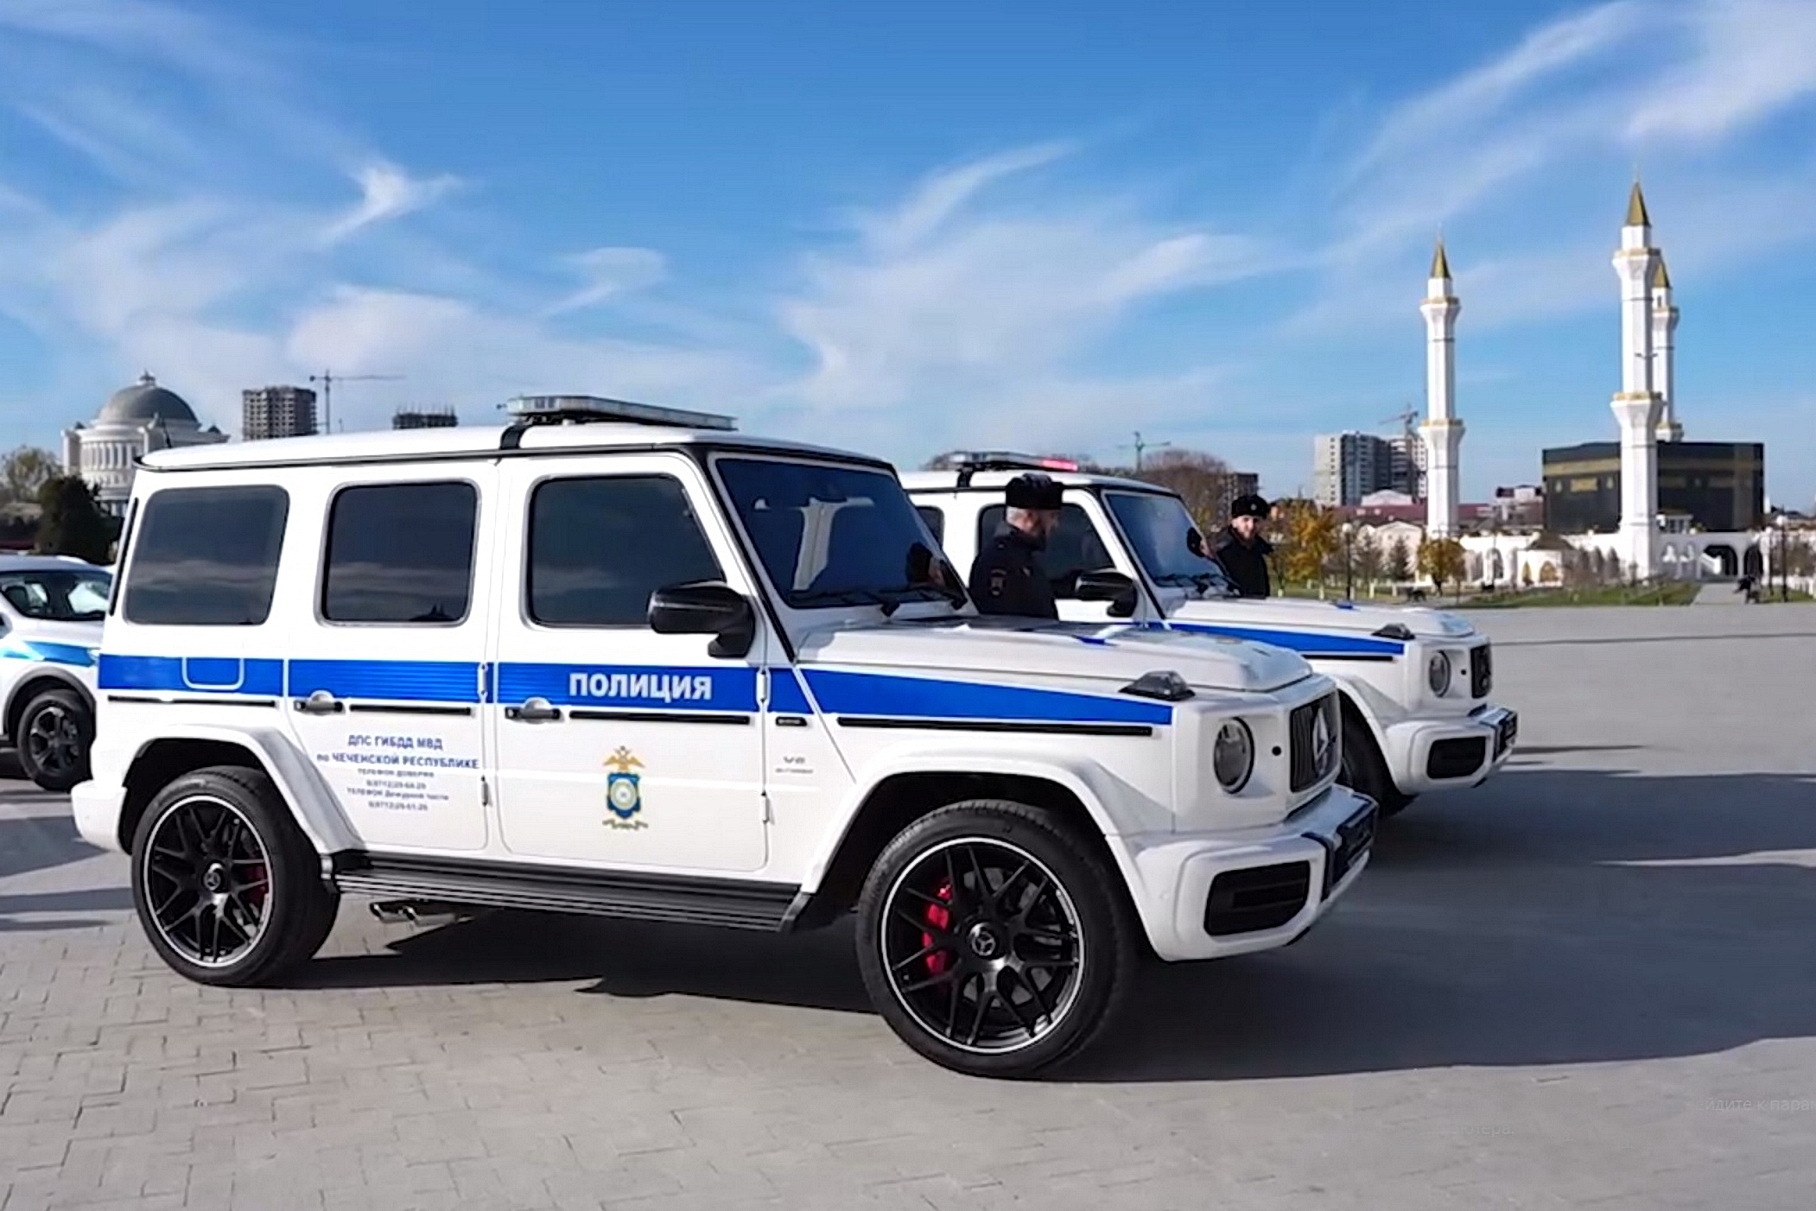 Видео: полиция Чечни получила новые Mercedes-AMG G 63